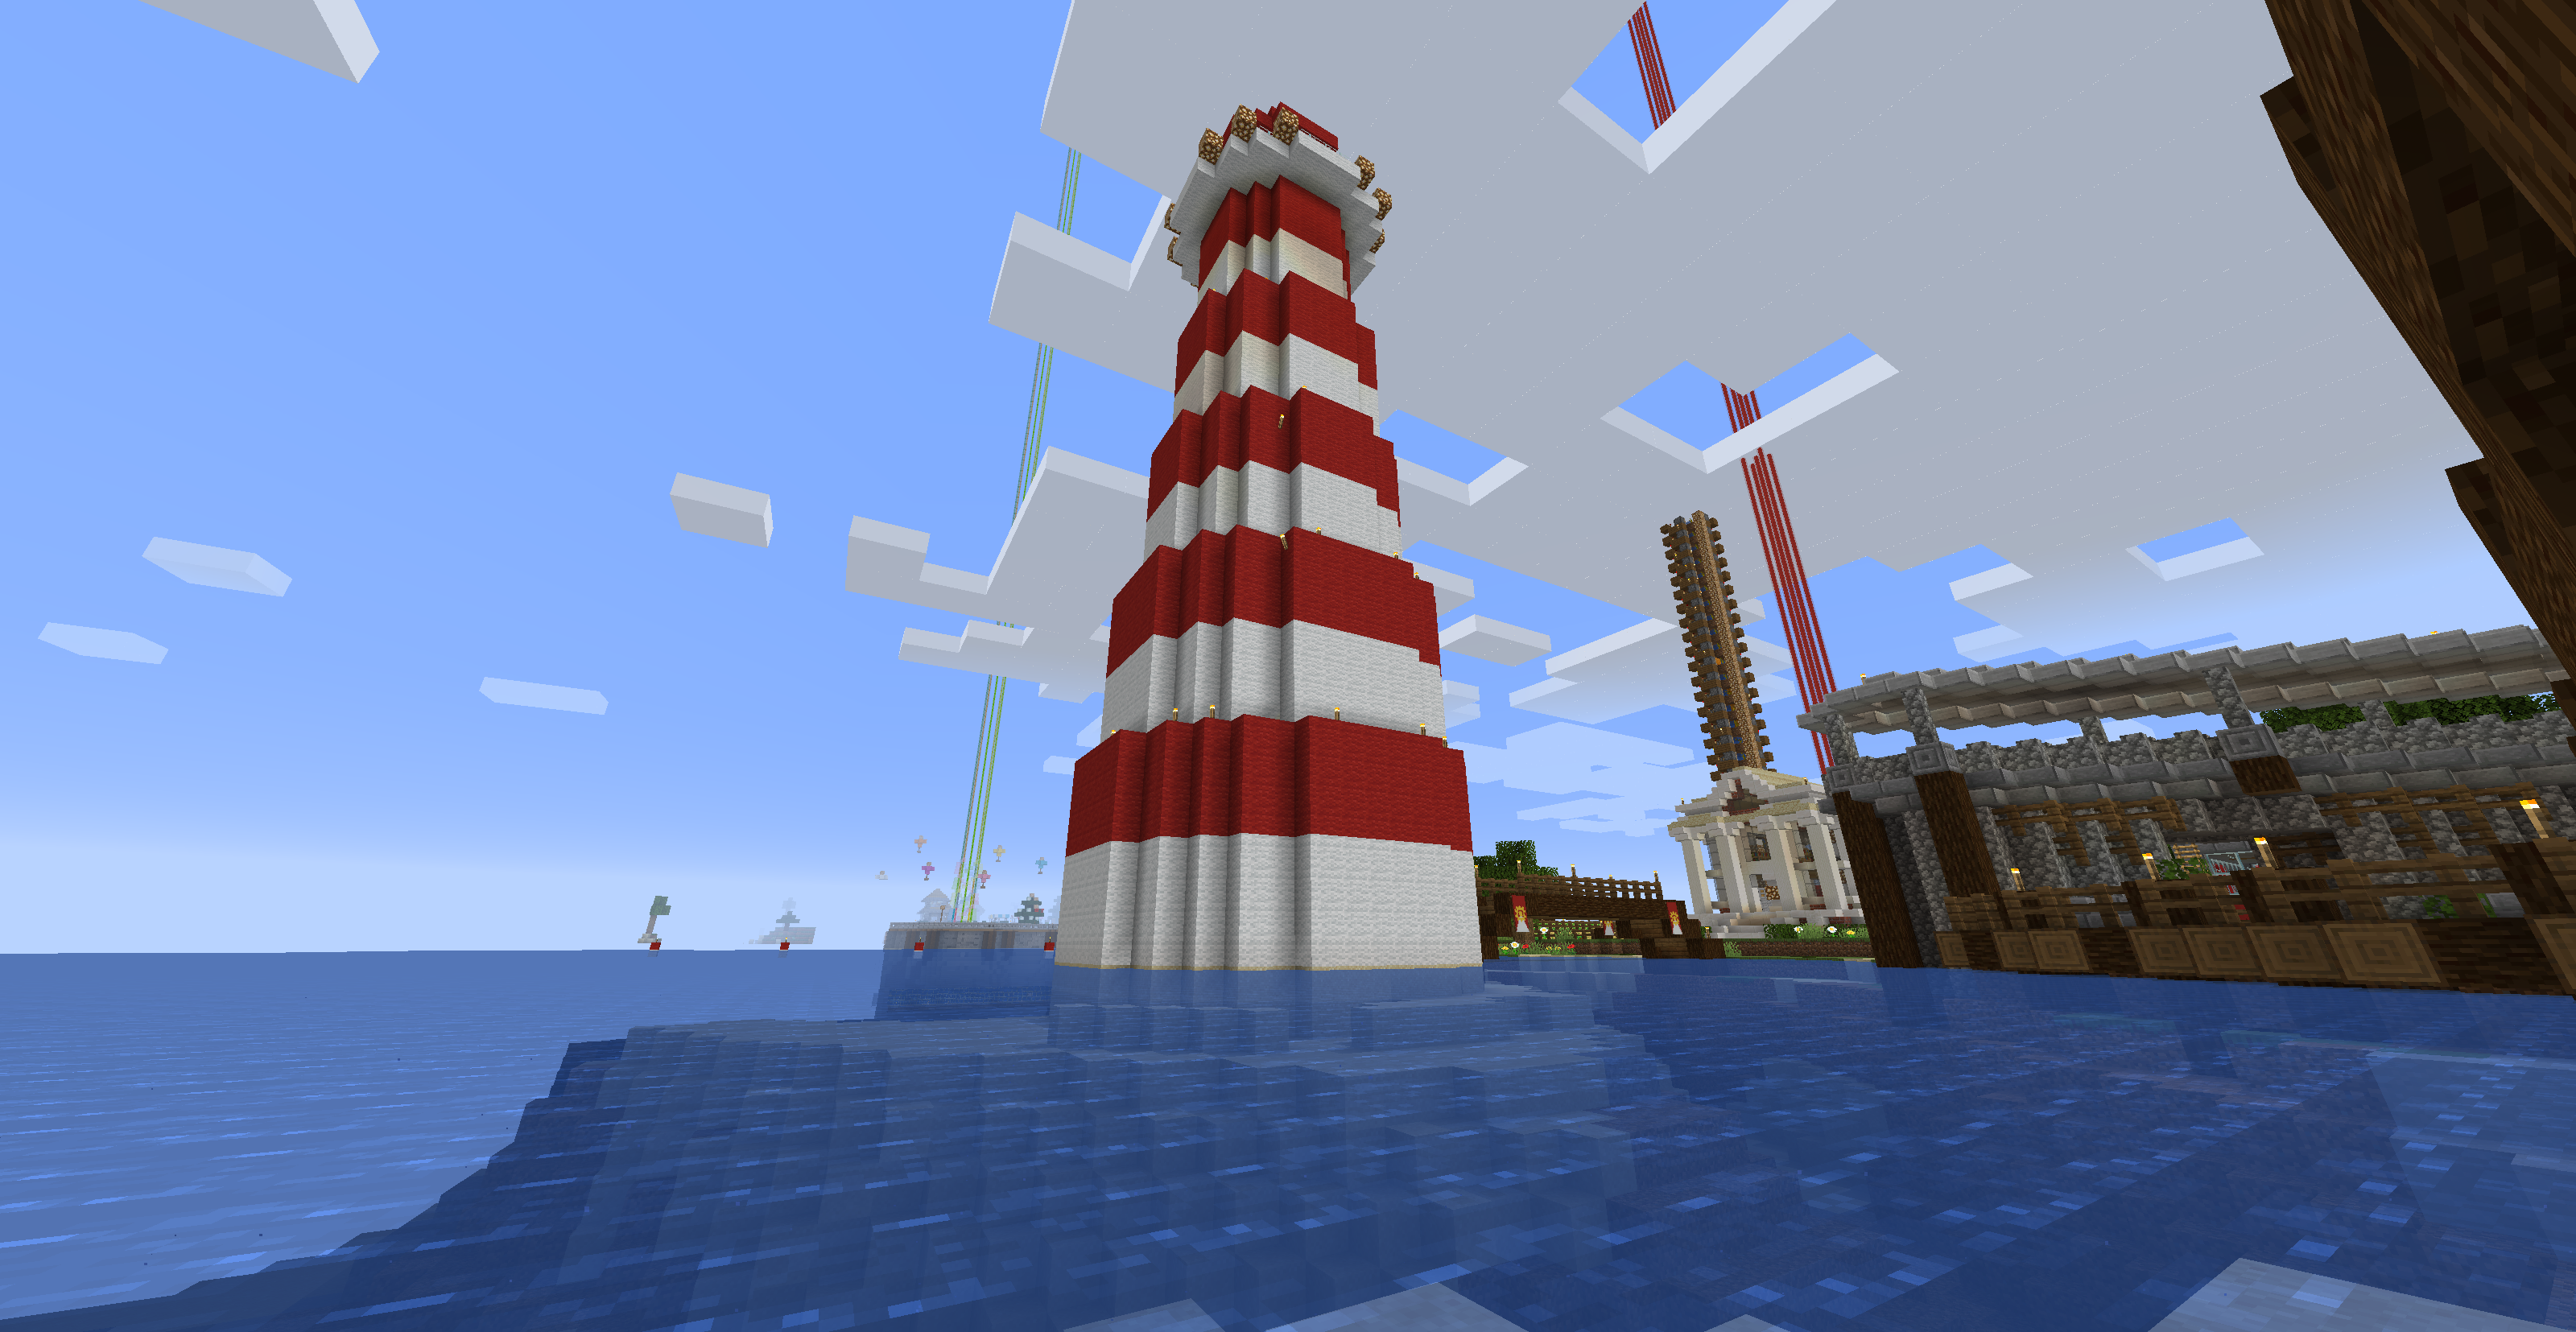 Lighthouse image